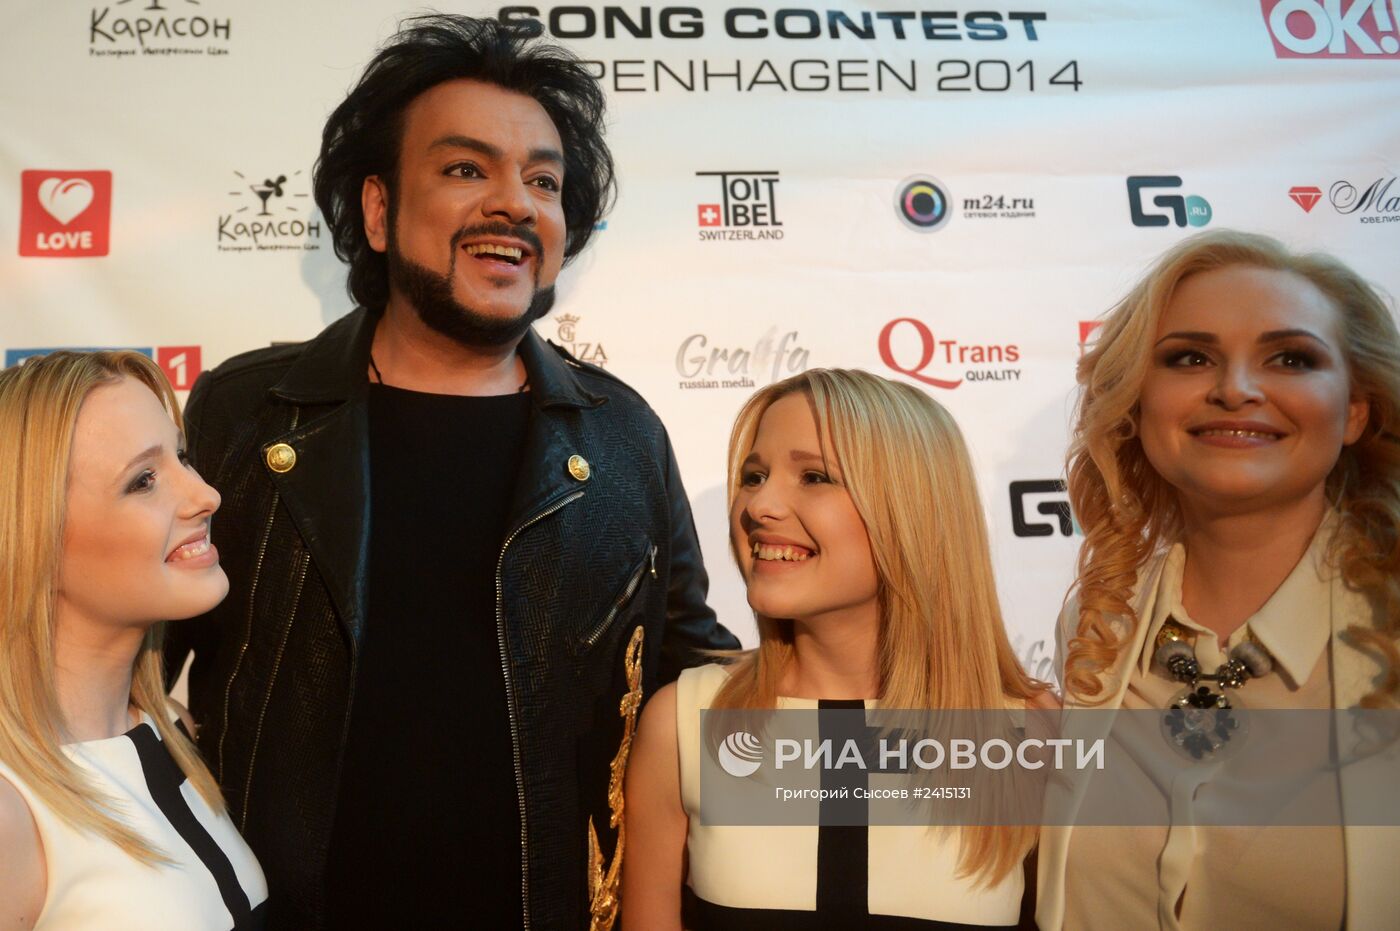 Российской pre-party международного песенного конкурса Eurovision